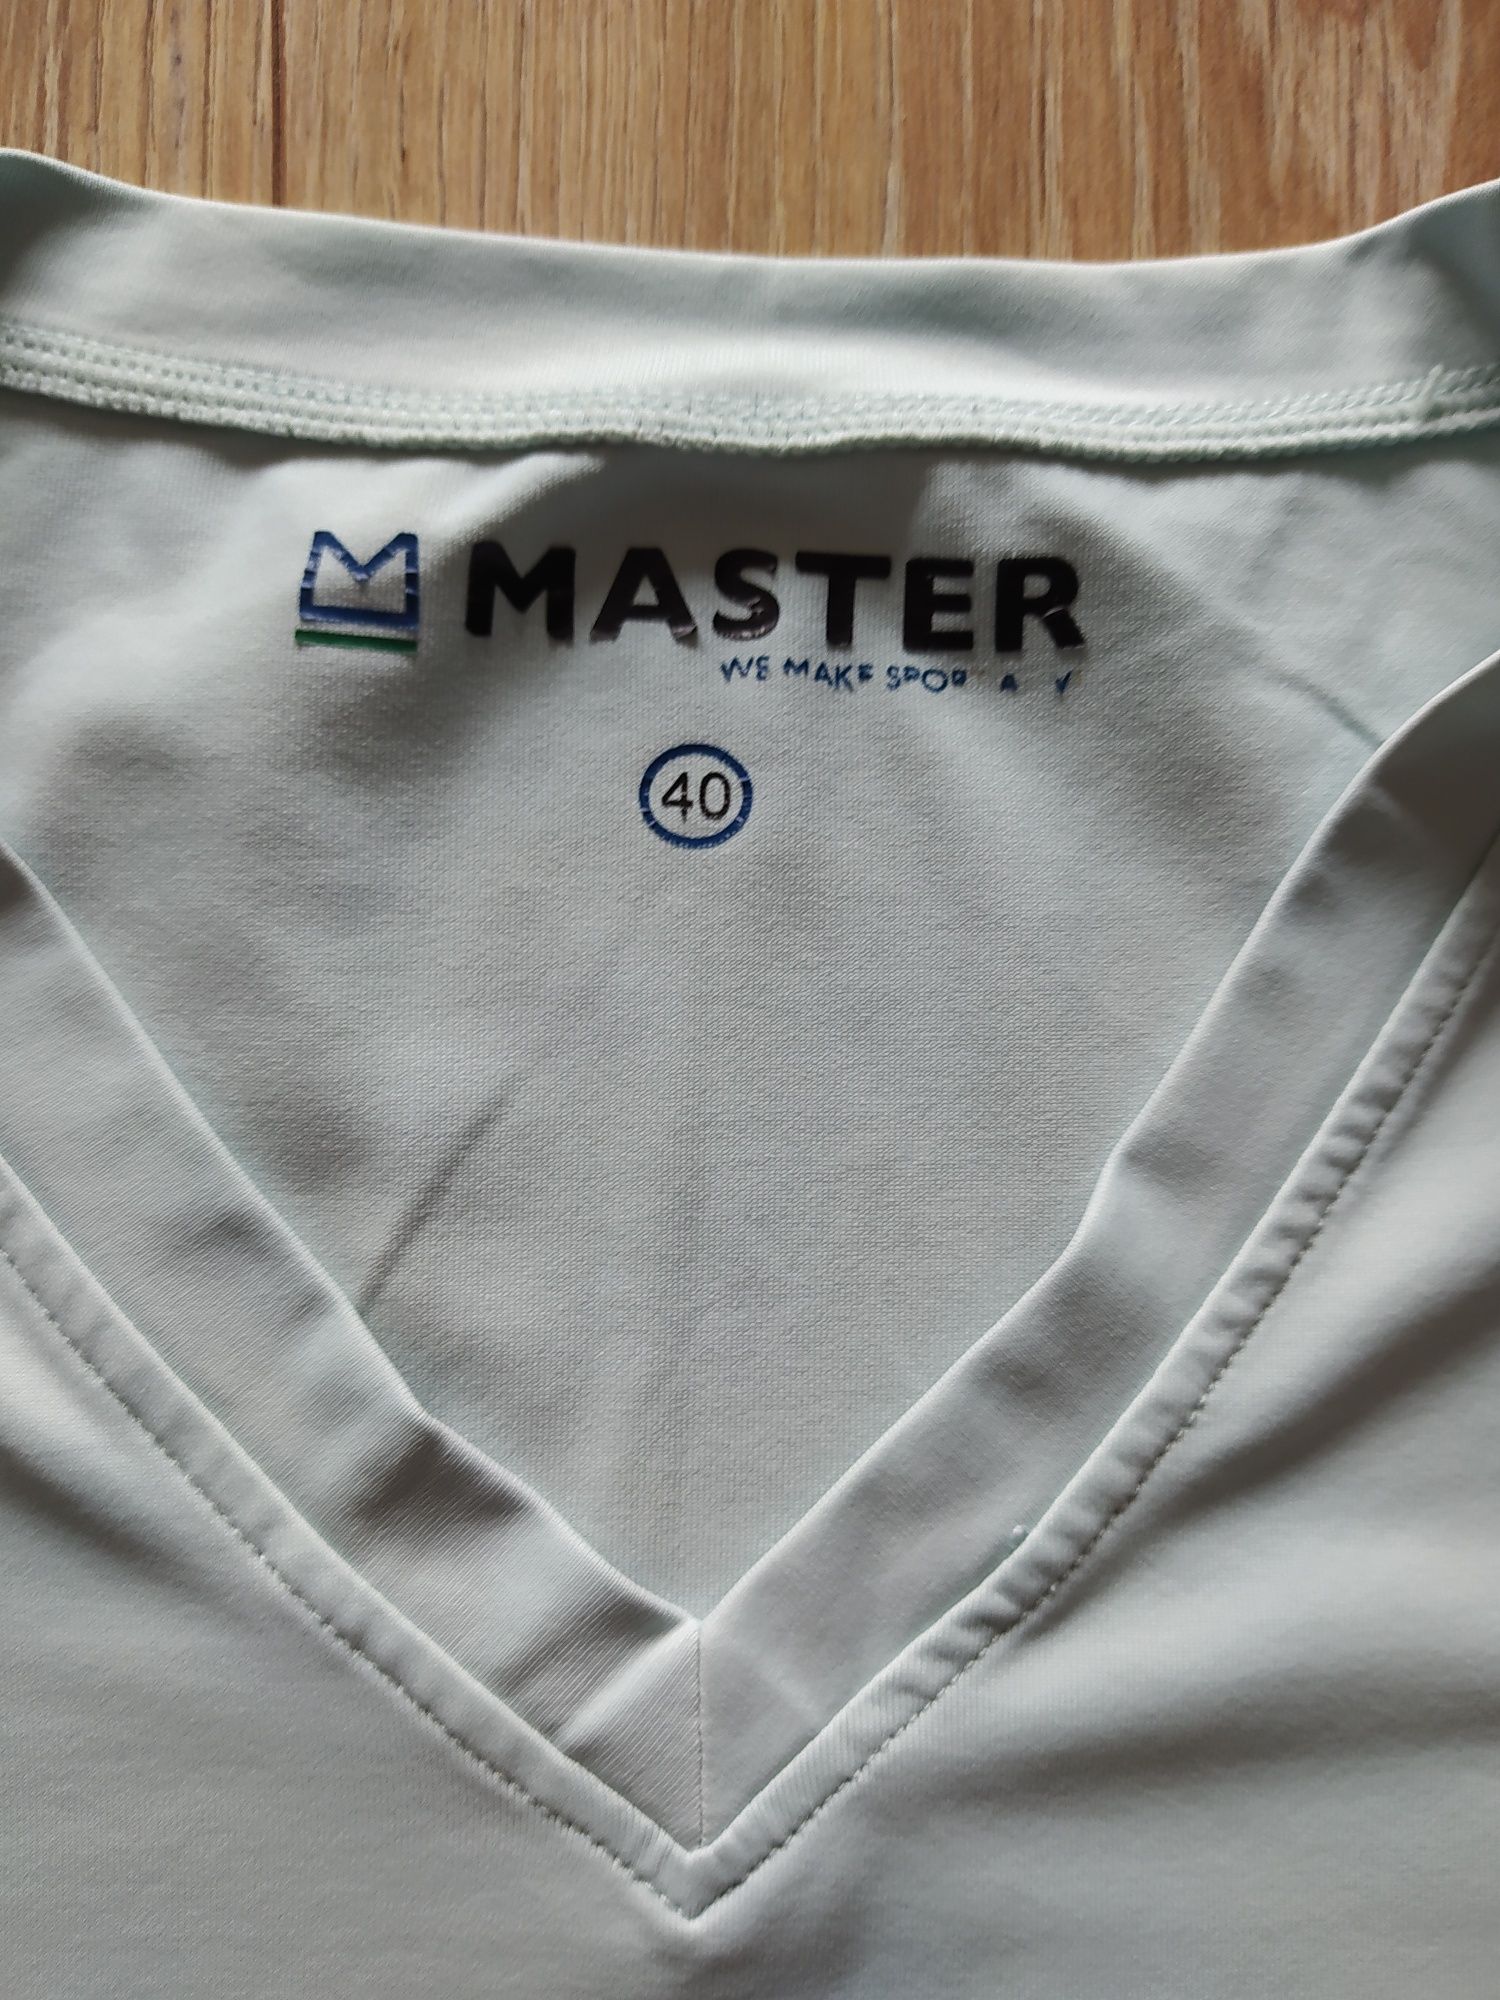 Master - koszulka sportowa, rozmiar 40